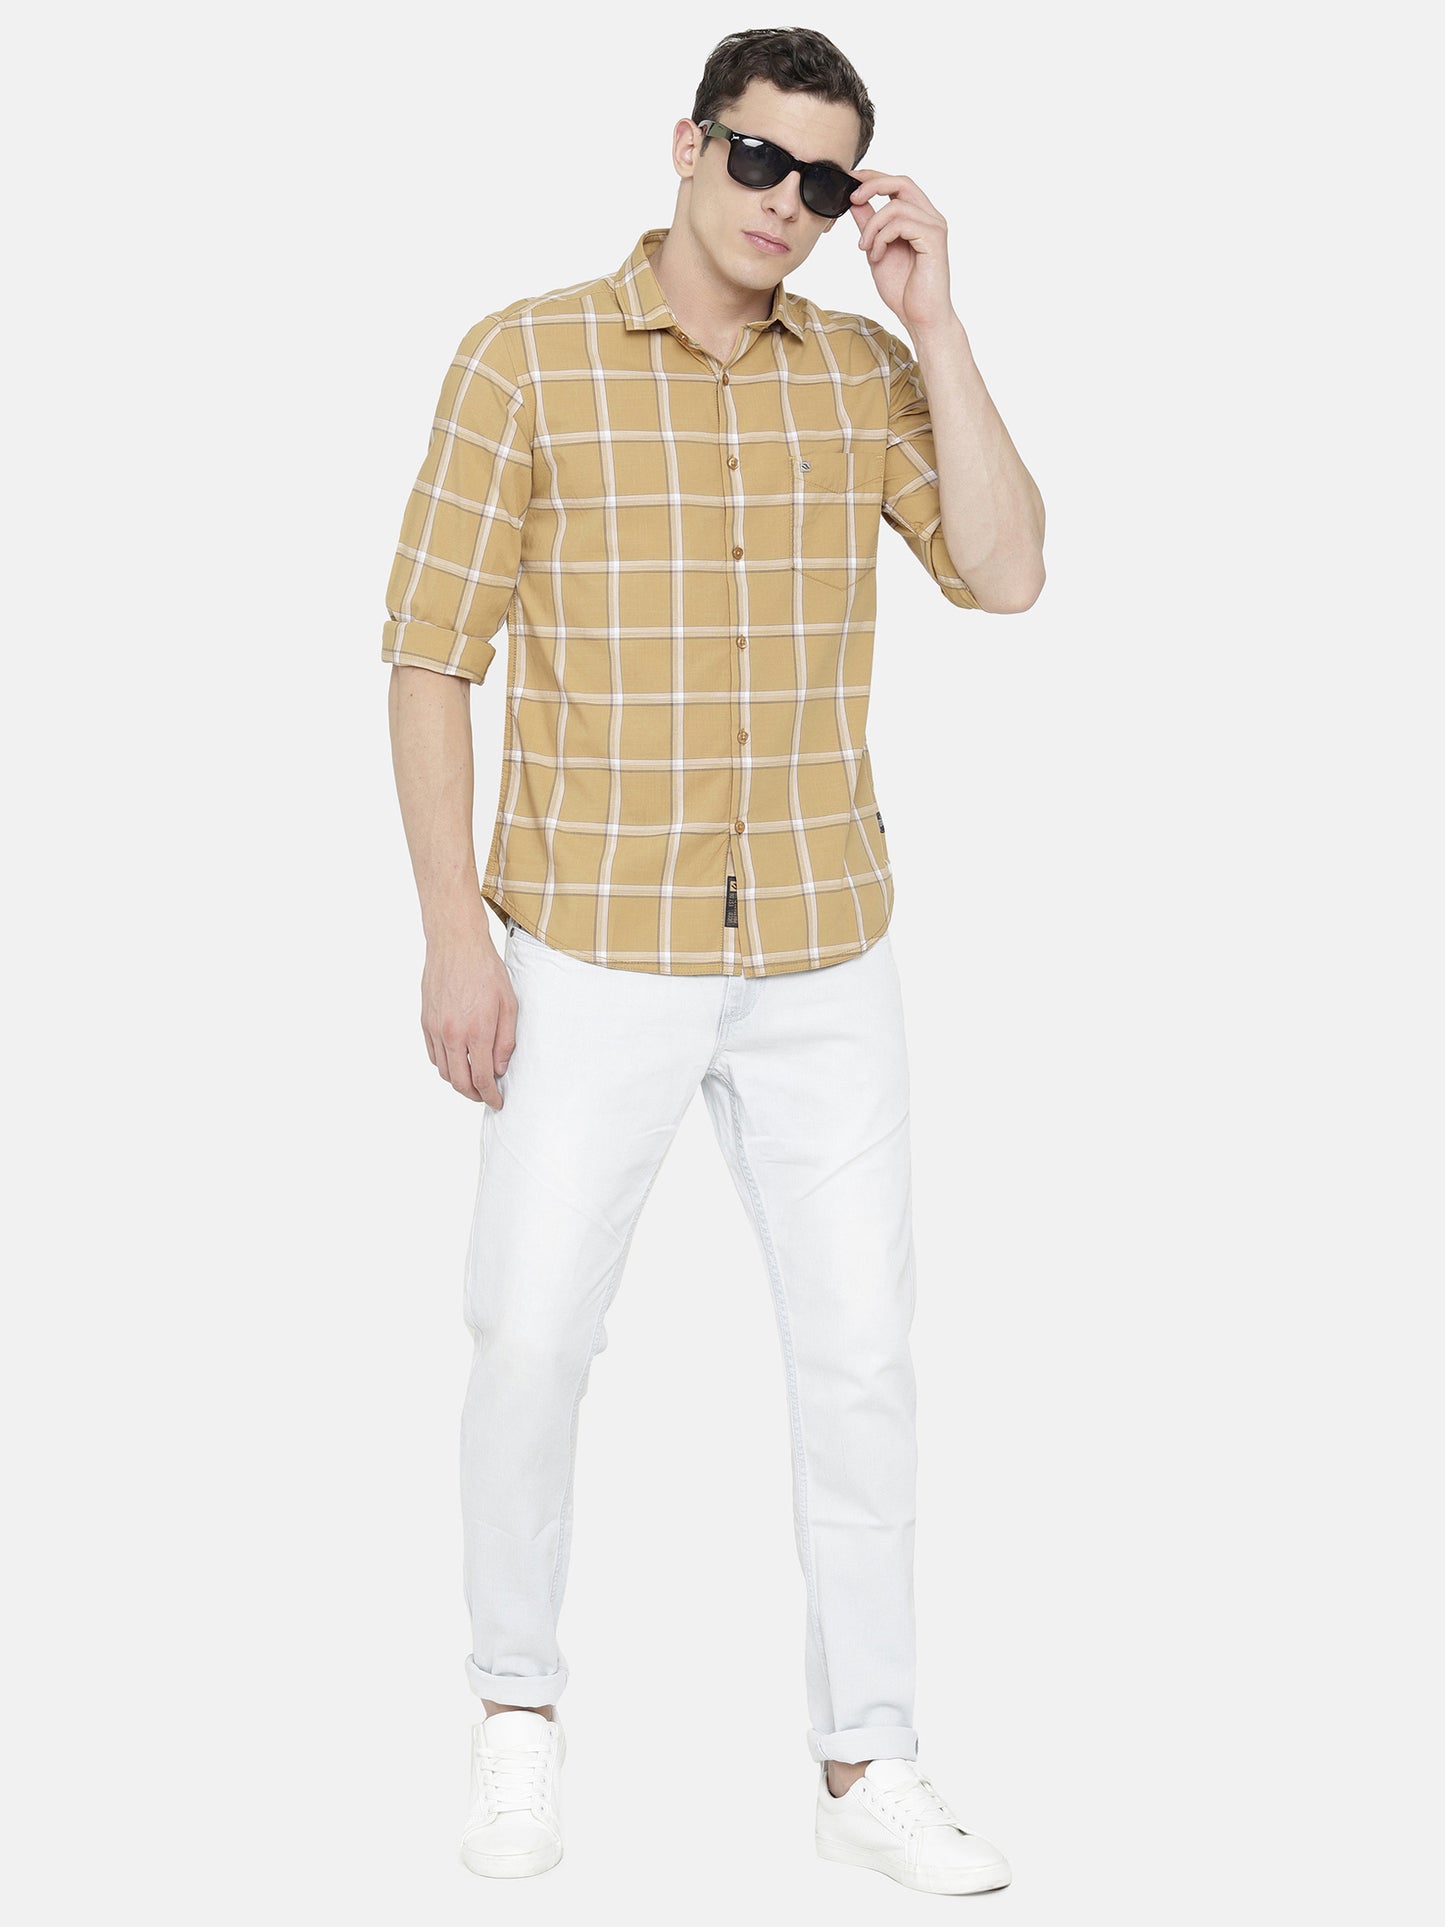 Mustard Yellow/ Brown Checkered Shirt